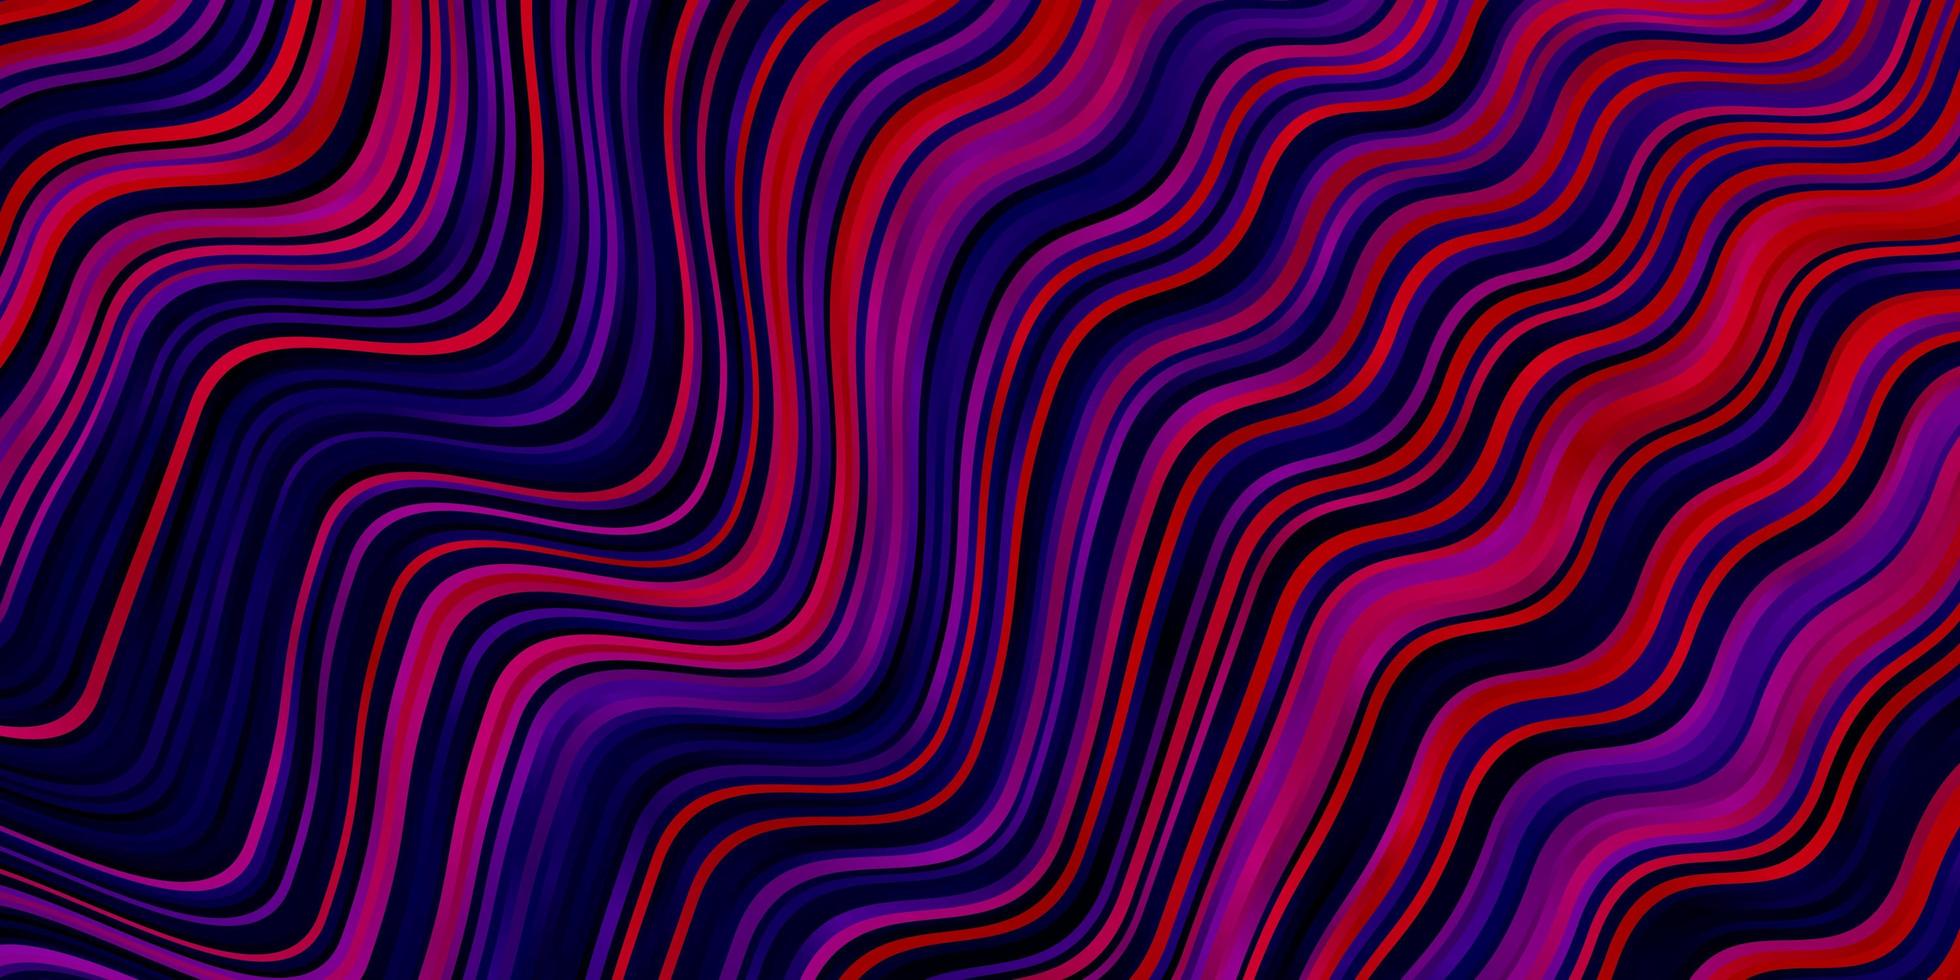 dunkelviolettes rosa Vektormuster mit schiefen Linien bunte Illustration im abstrakten Stil mit gebogenen Linien intelligentes Design für Ihre Werbeaktionen vektor